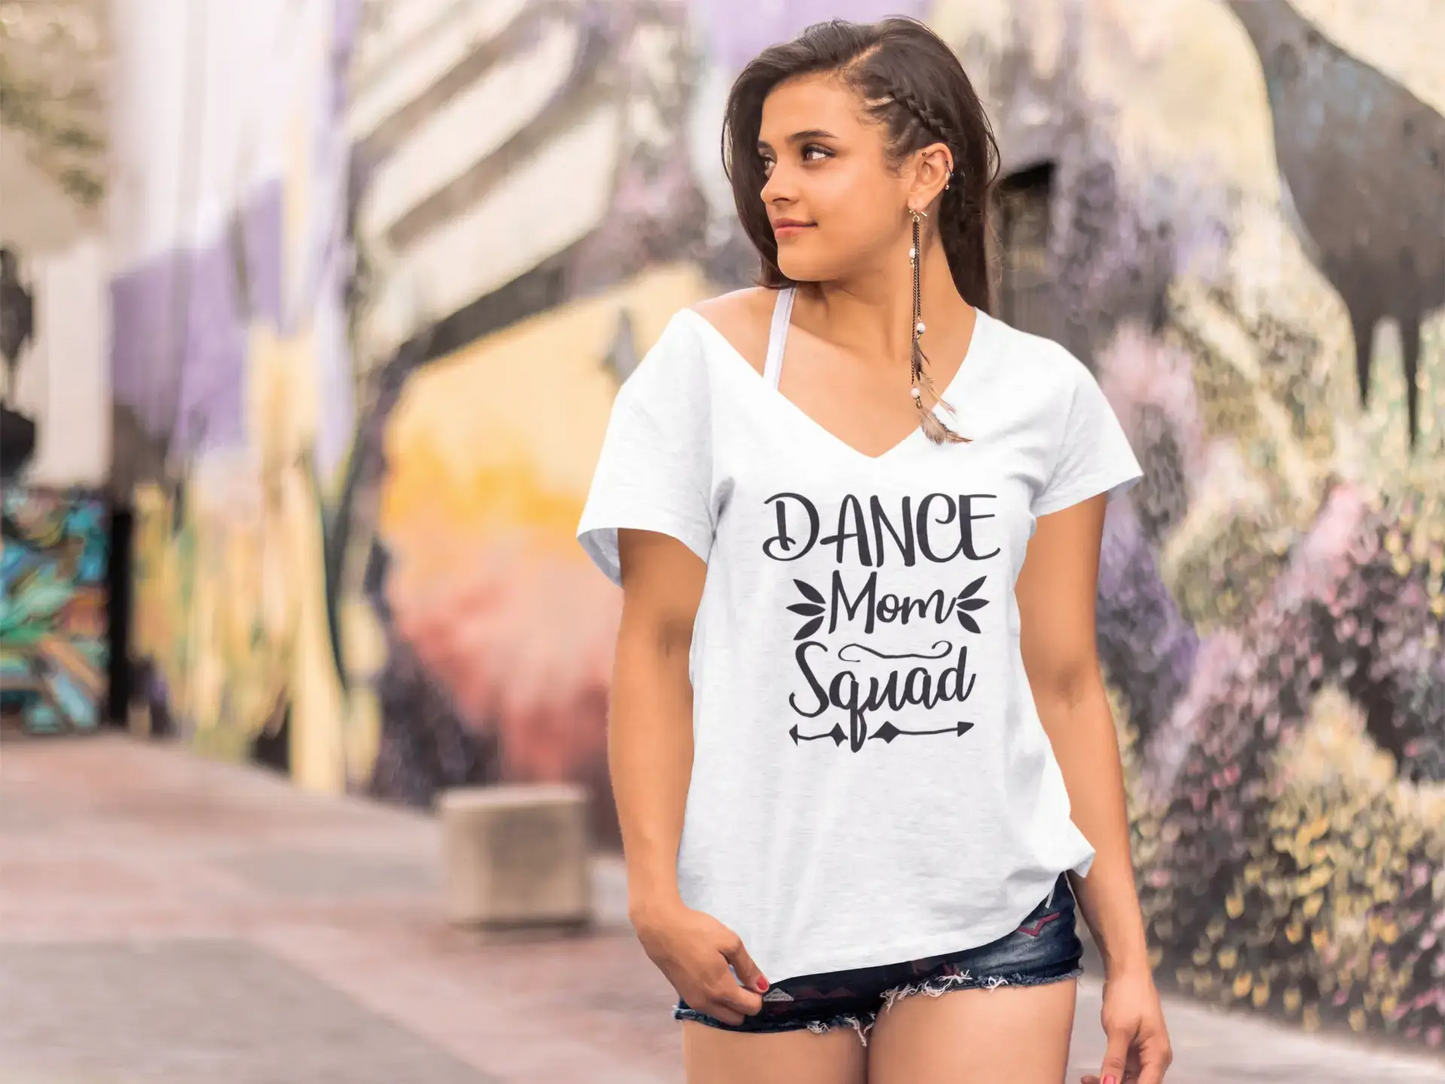 ULTRABASIC Women's T-Shirt Dance Mom Squad - Short Sleeve Tee Shirt Gift Tops